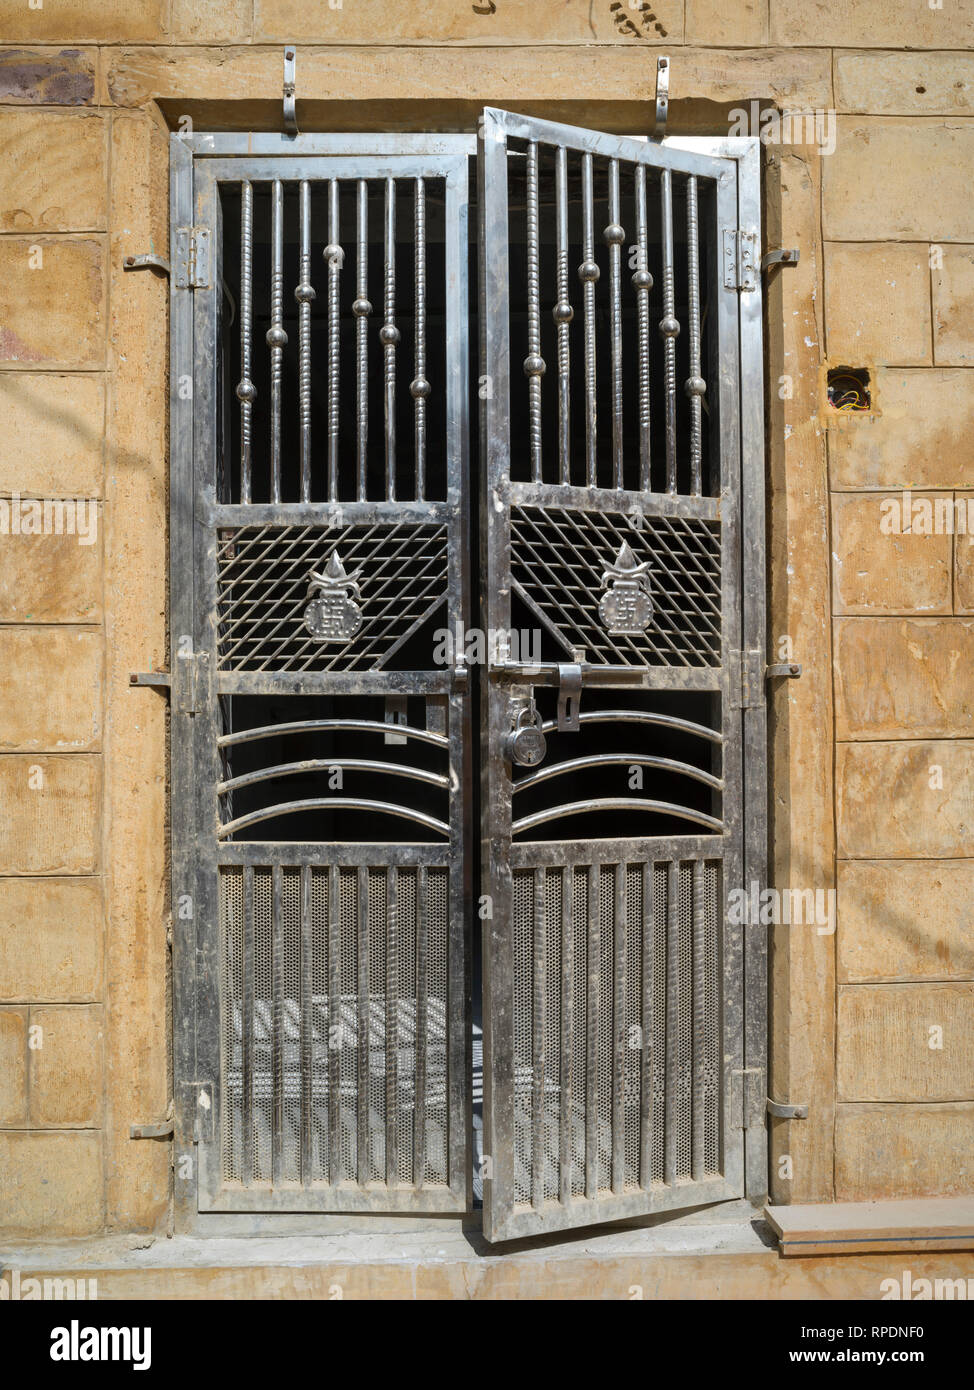 Porte métallique Banque de photographies et d'images à haute résolution -  Alamy